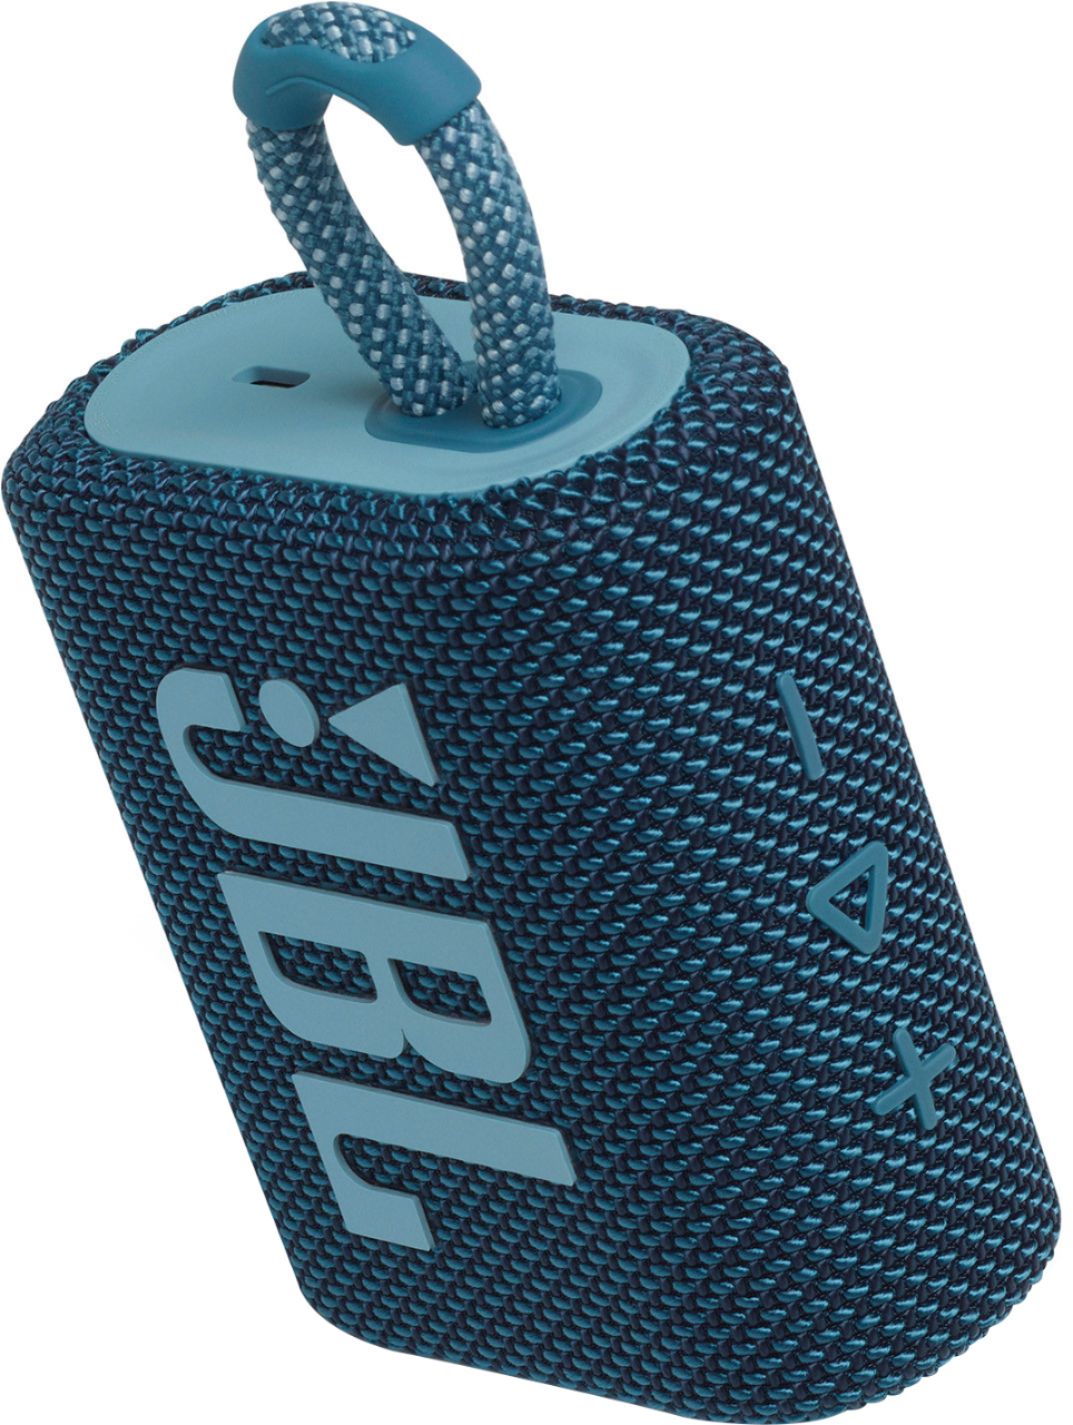 JBL Go 3 Eco et Clip 4 Eco : des enceintes Bluetooth ultra